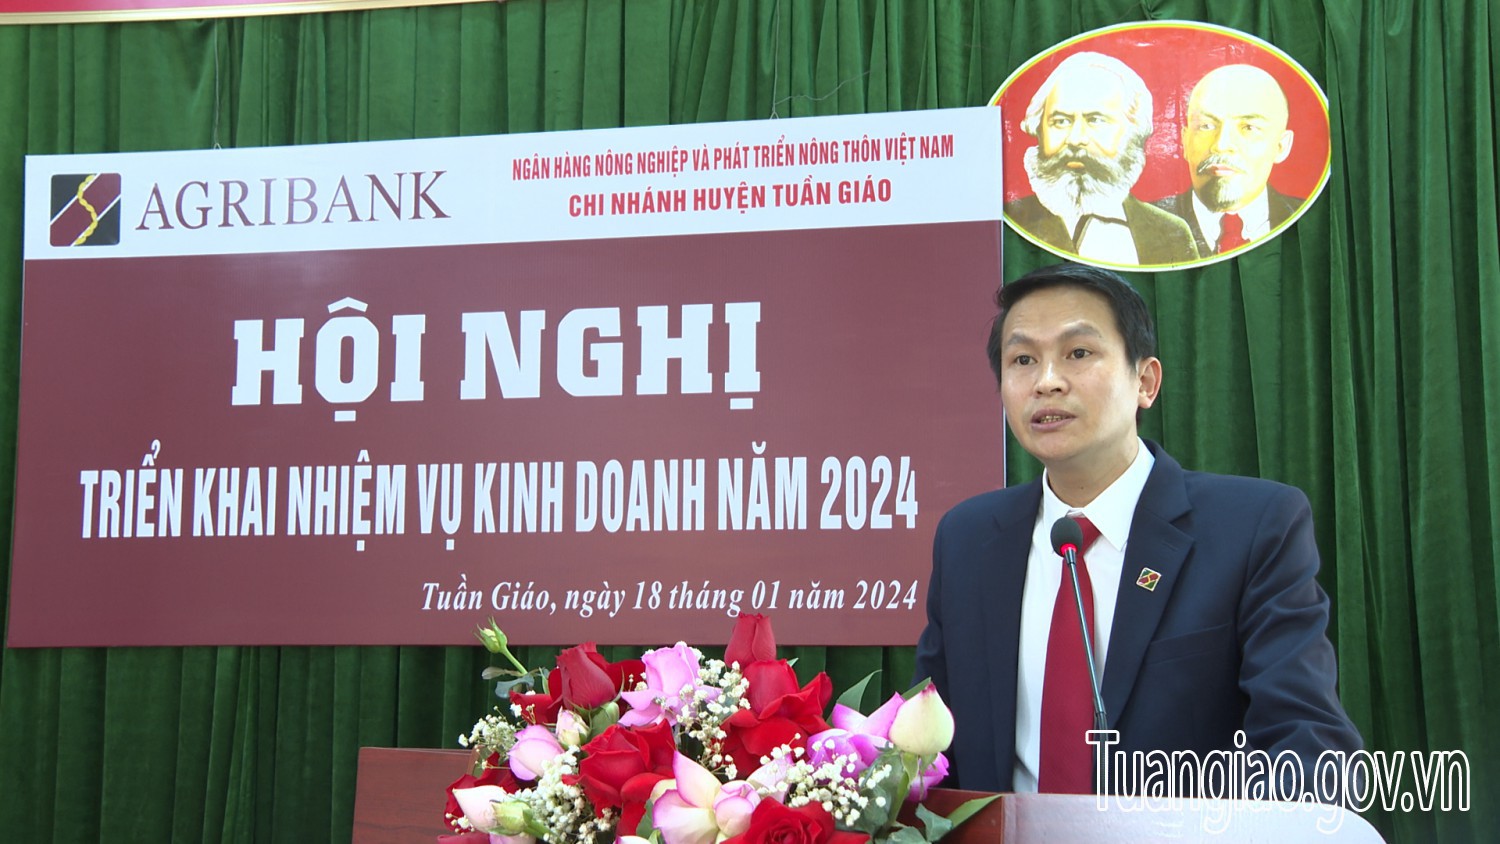 Agribank Chi nhánh huyện Tuần Giáo triển khai nhiệm vụ năm 2024